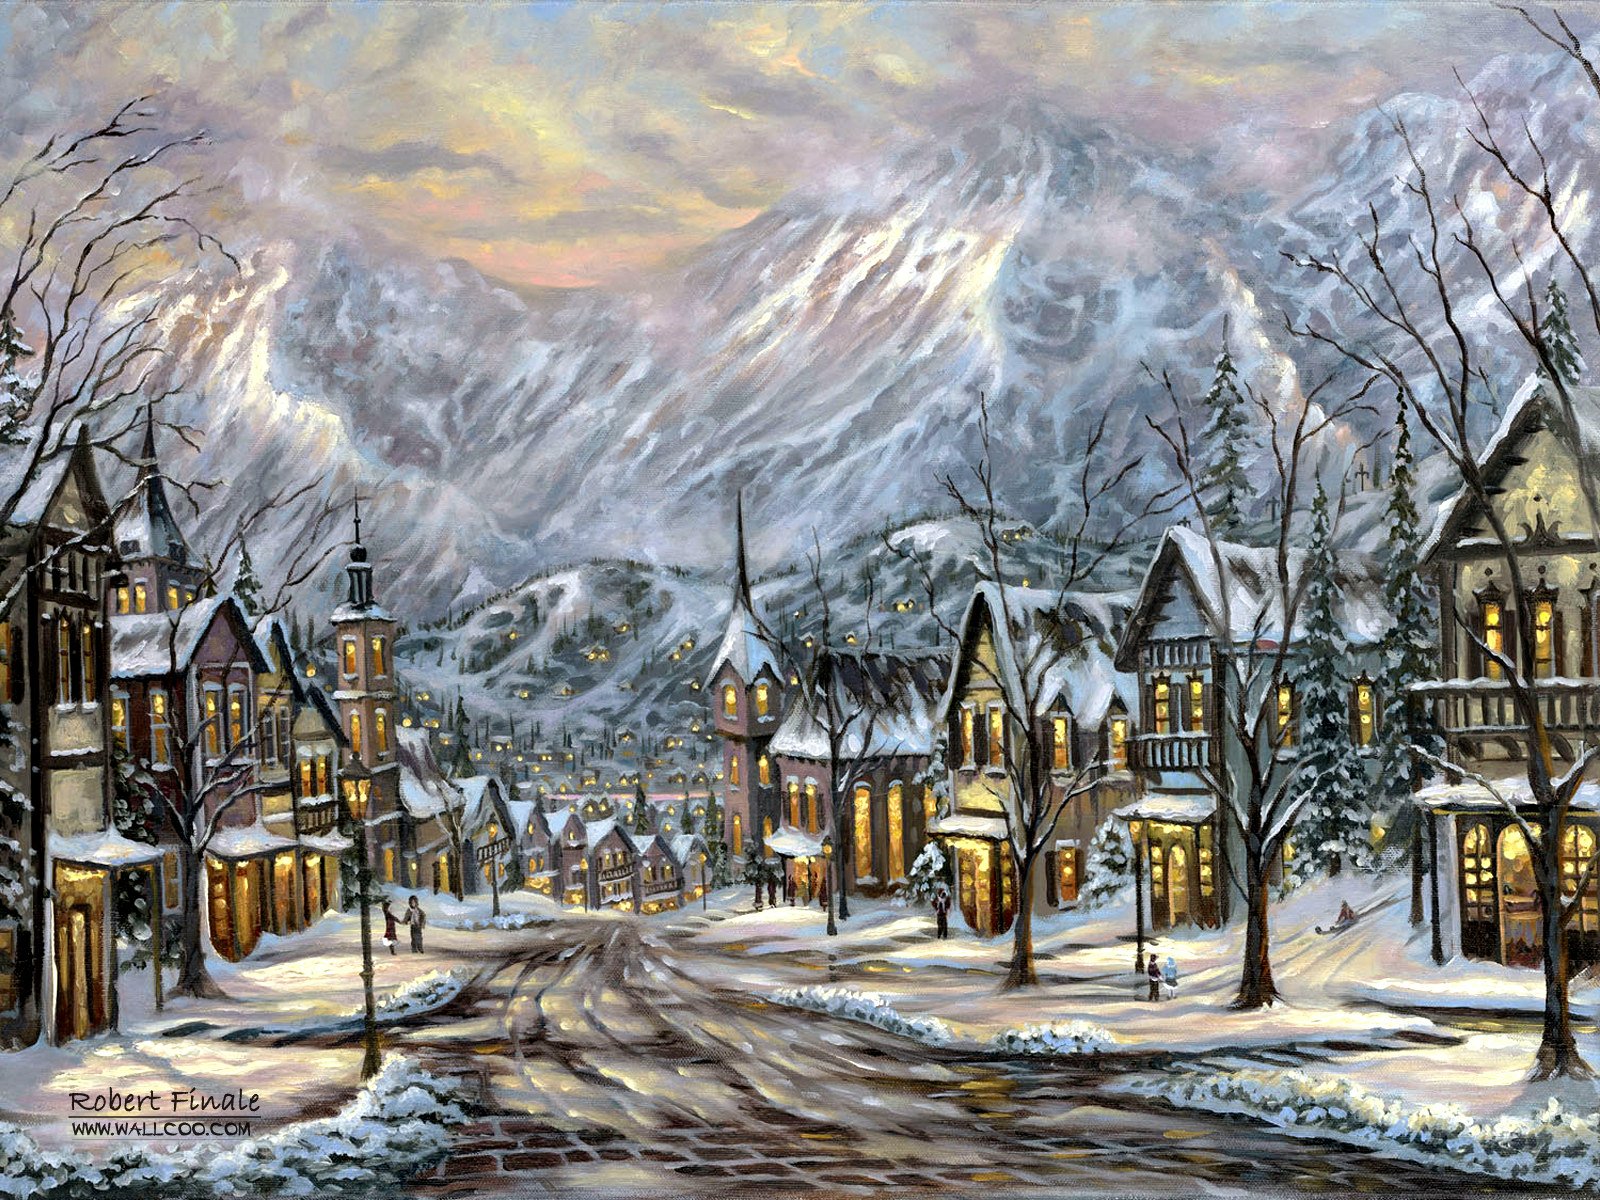 Winter in Austrian Mountain Village by Robert Finale